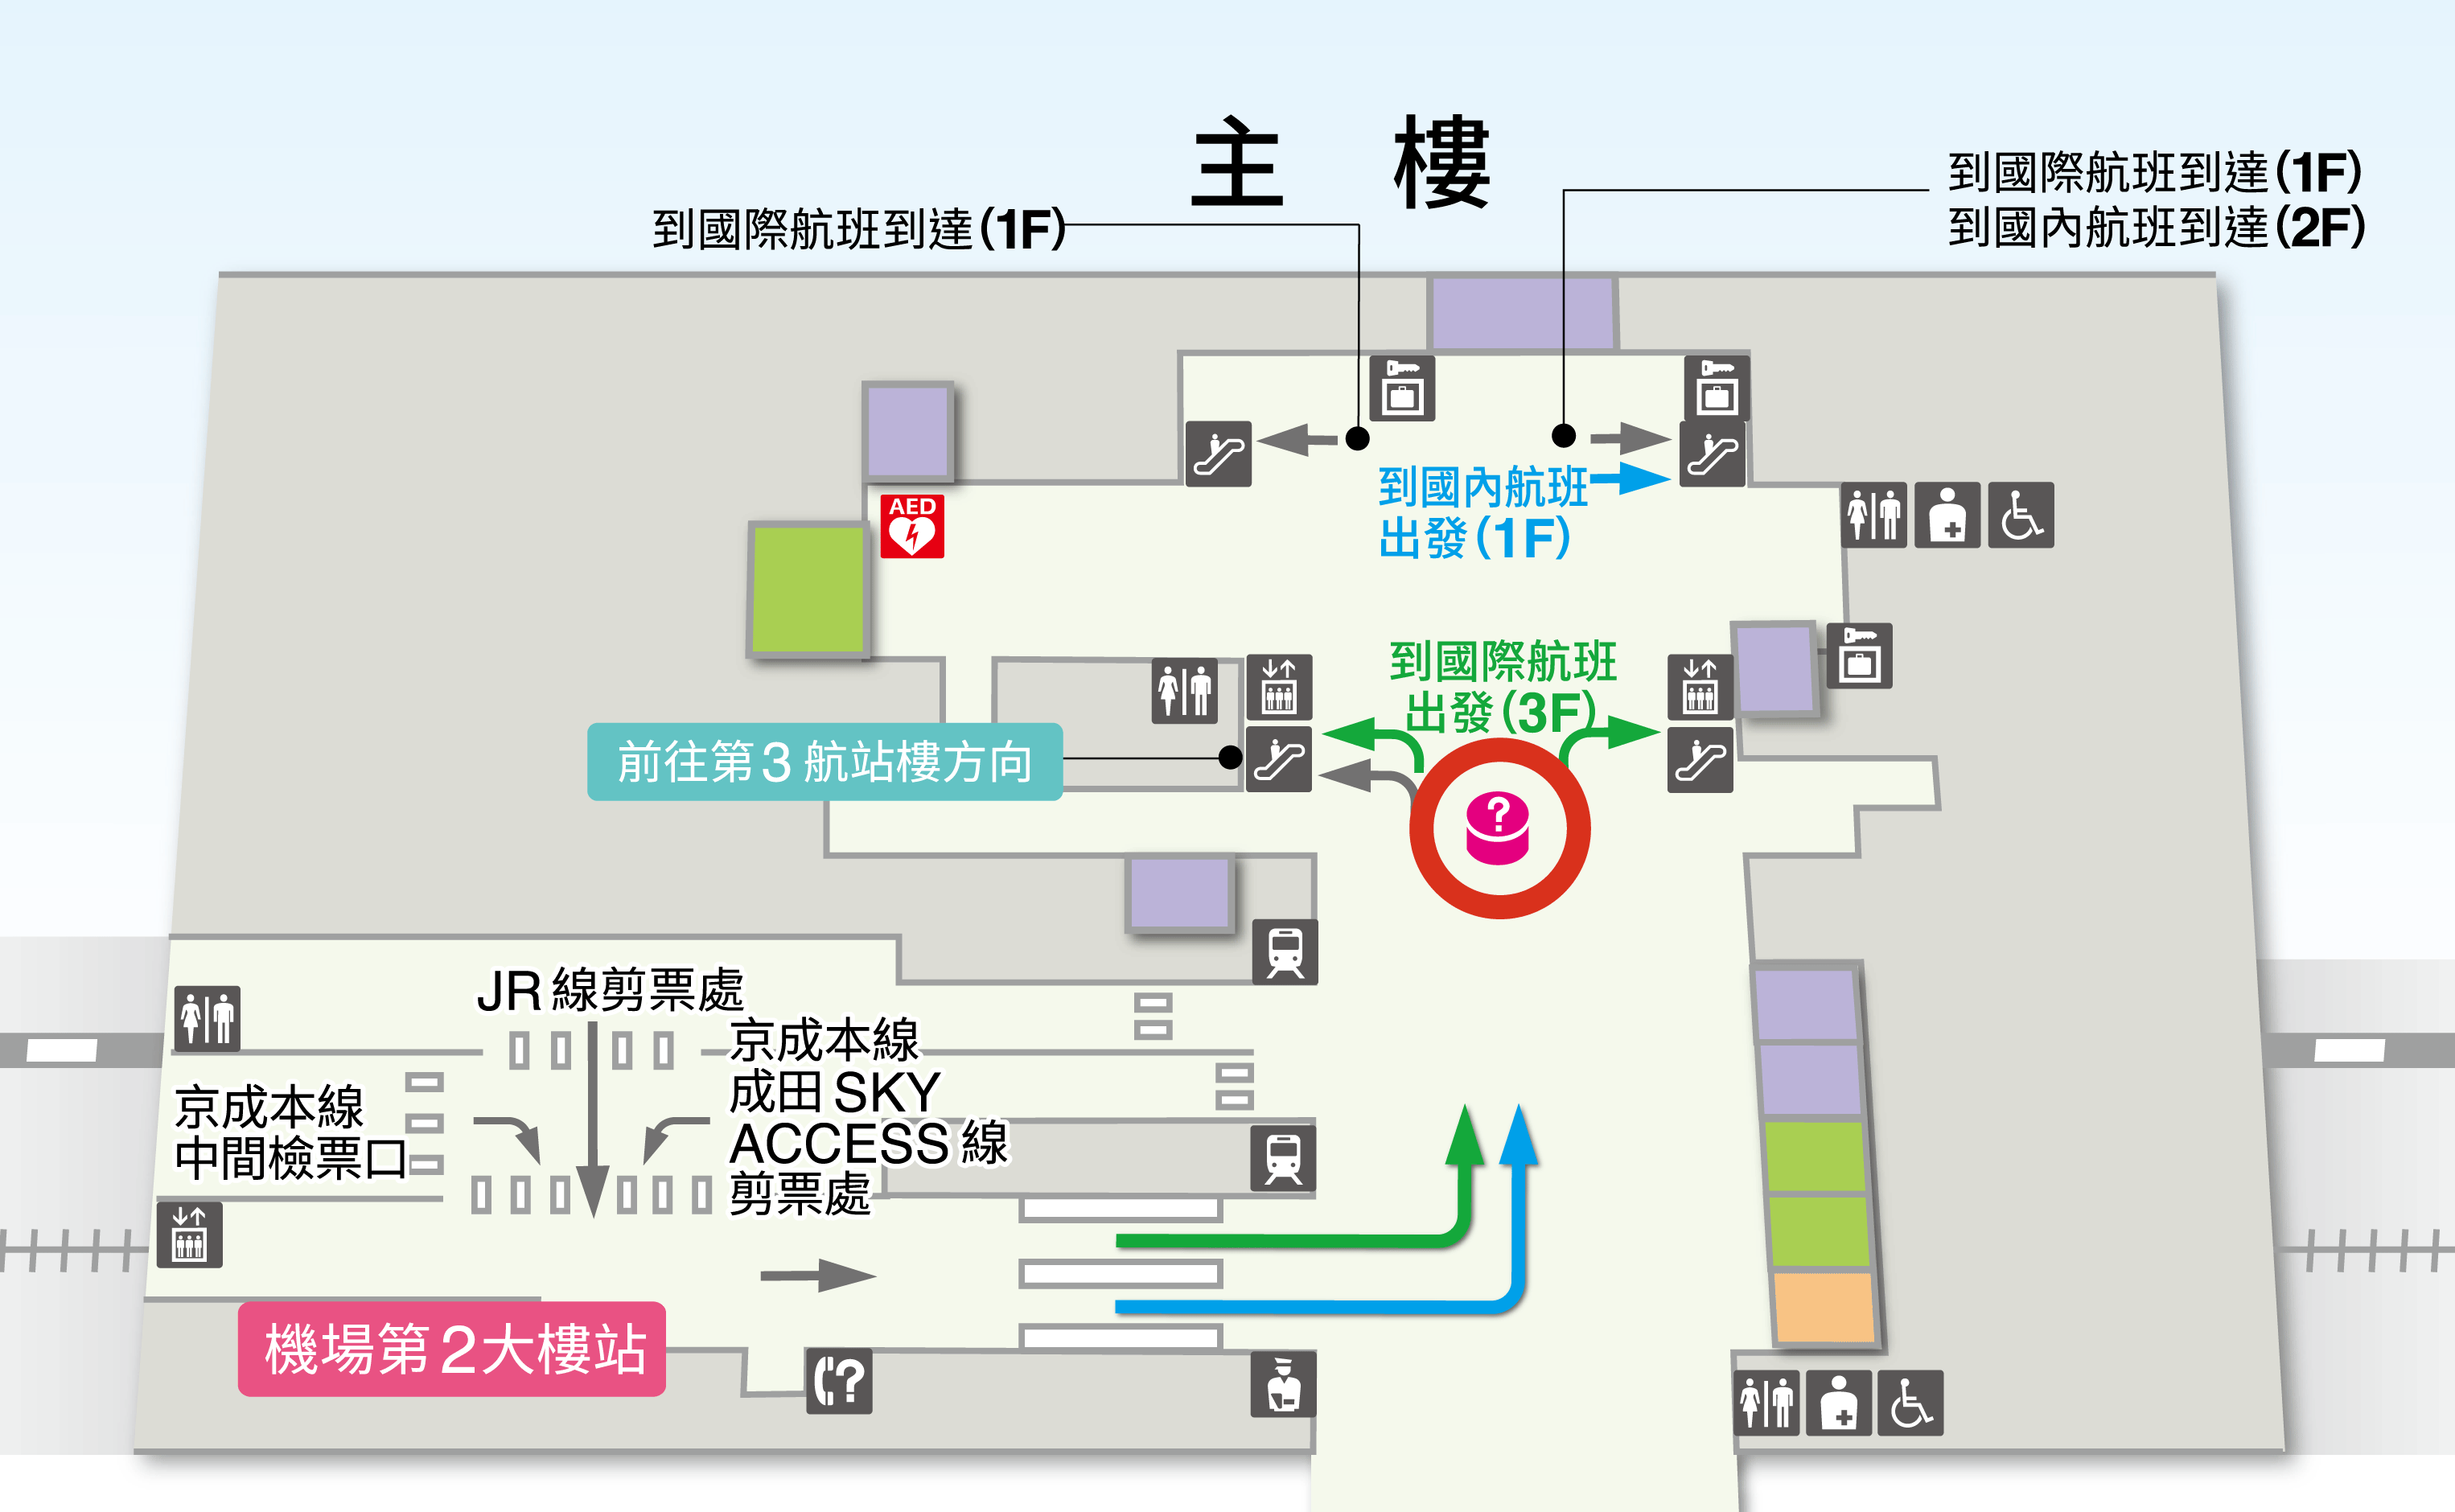 第2候機樓 B1F 鐵路車站 樓層地圖圖示